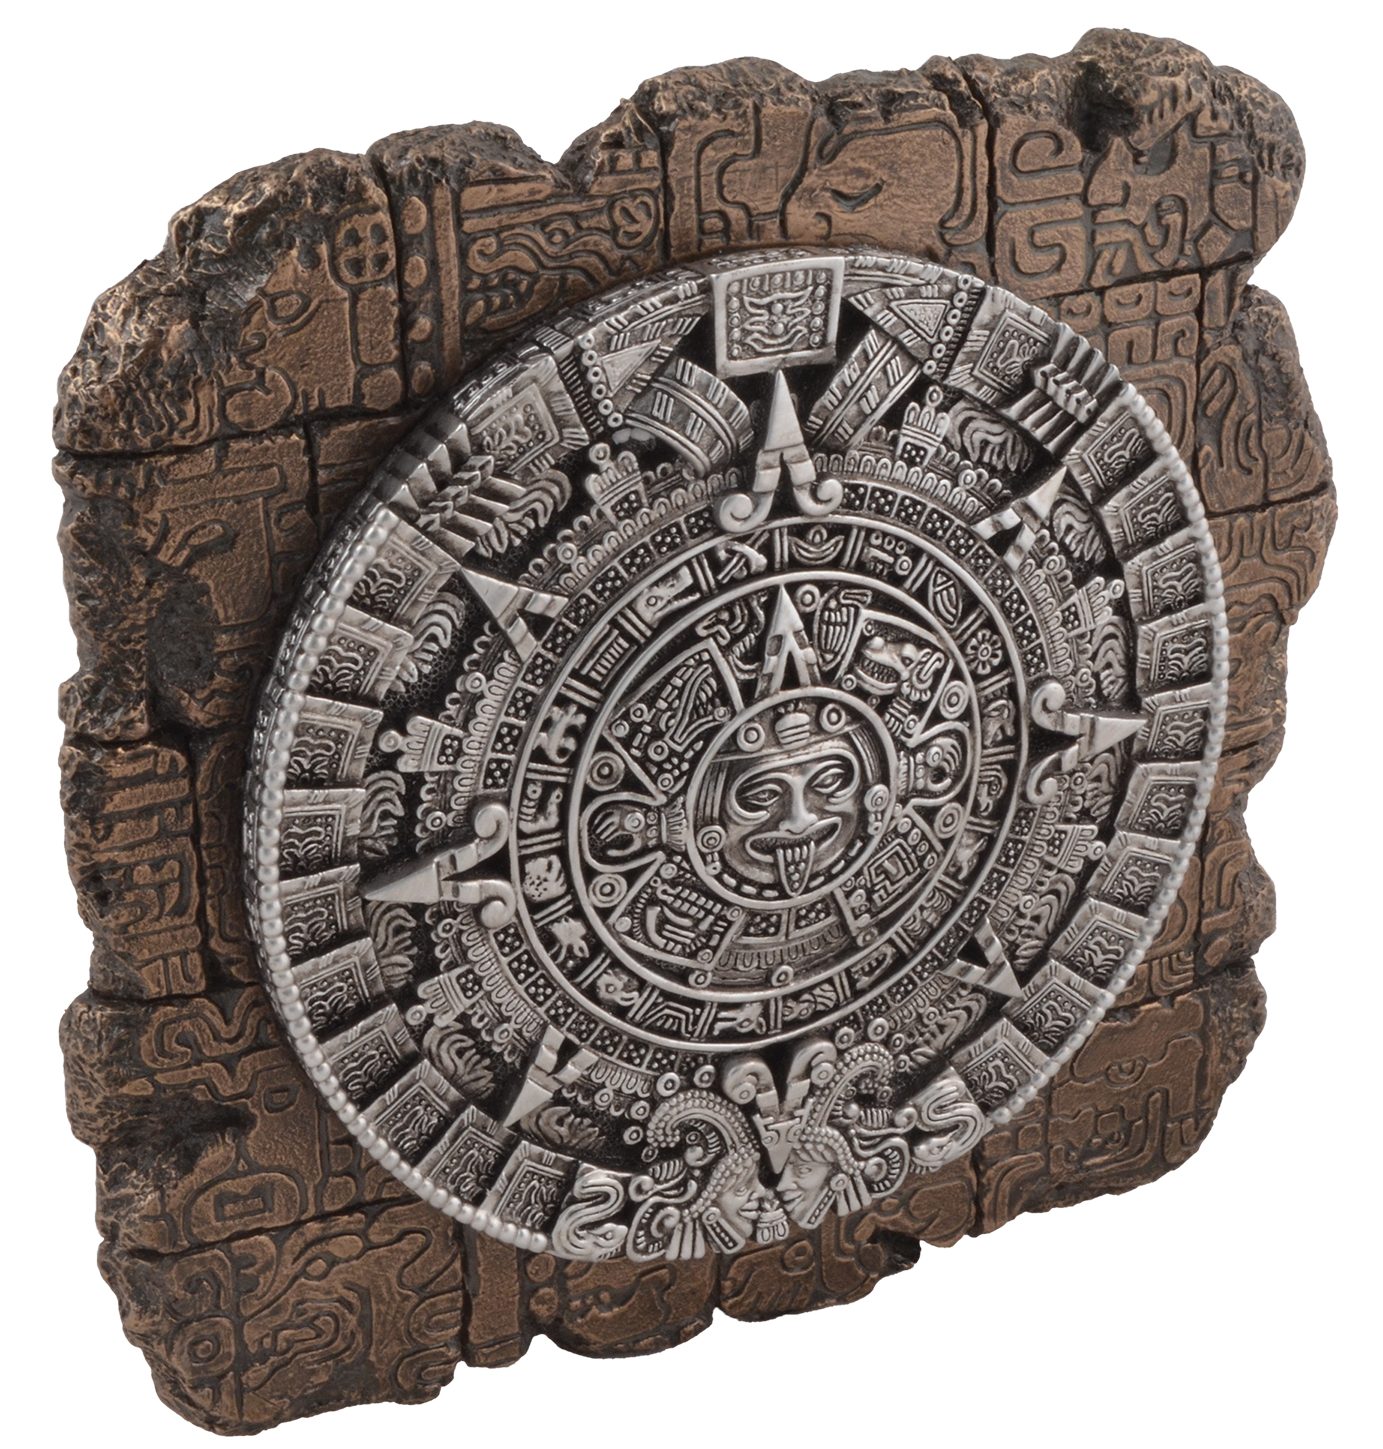 - direct von Hand ca. 23x22x4cm Vogler Veronese, Aztekenkalender Wandrelief LxBxH Wanddekoobjekt bronziert by bronziert, Gmbh